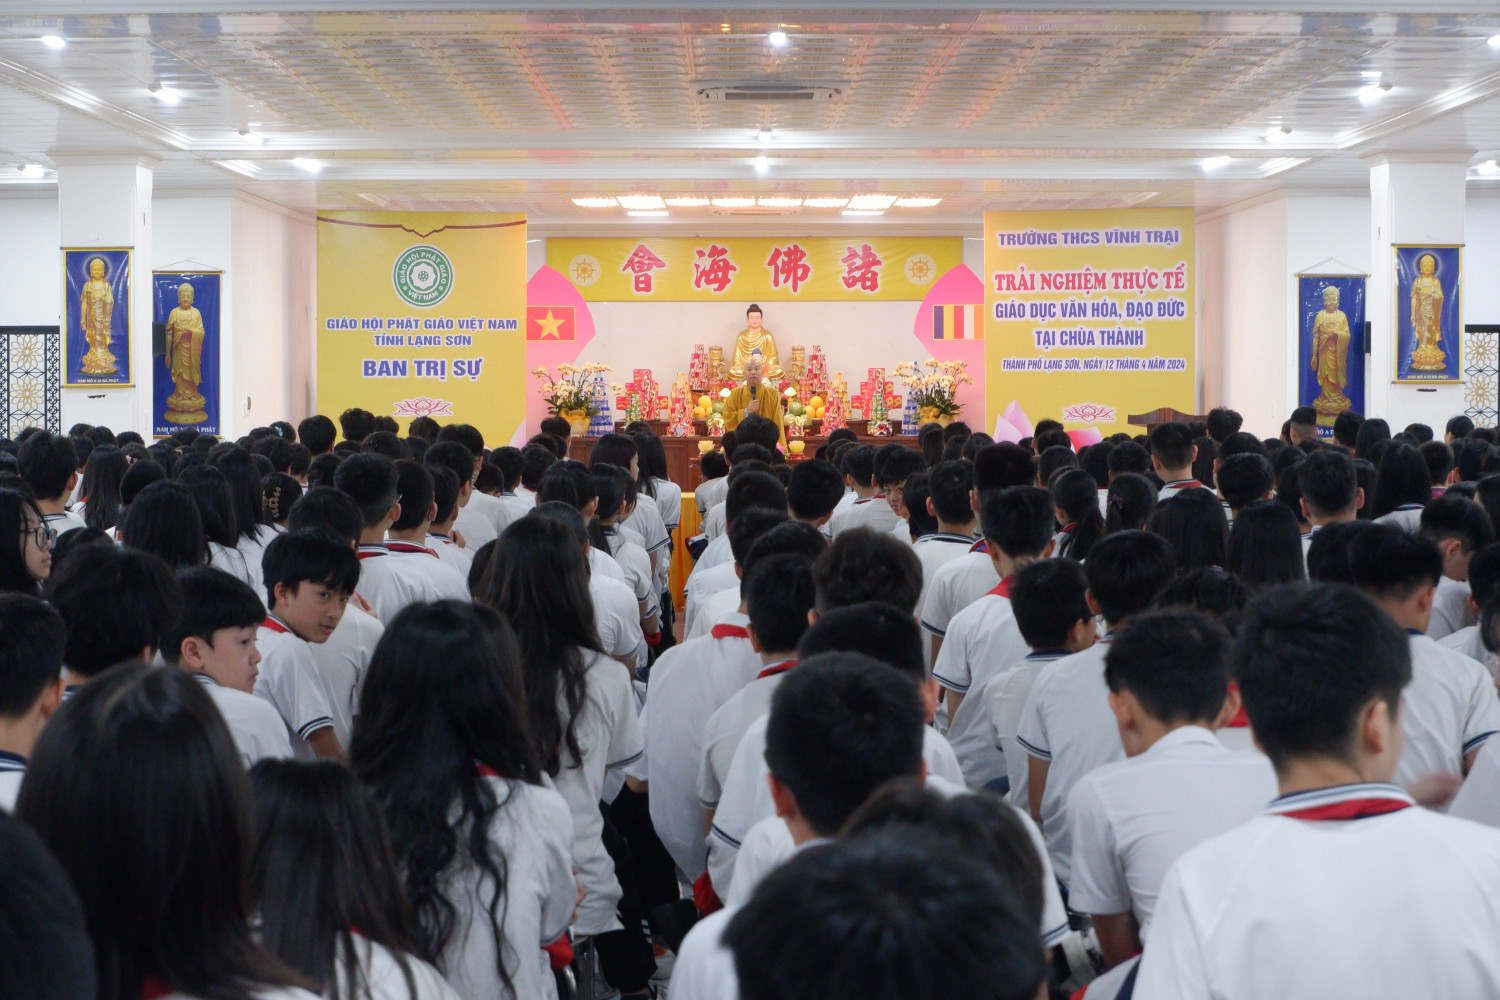 Lạng Sơn: Thượng tọa Thích Quảng Truyền chia sẻ về chữ Hiếu cho các em học sinh